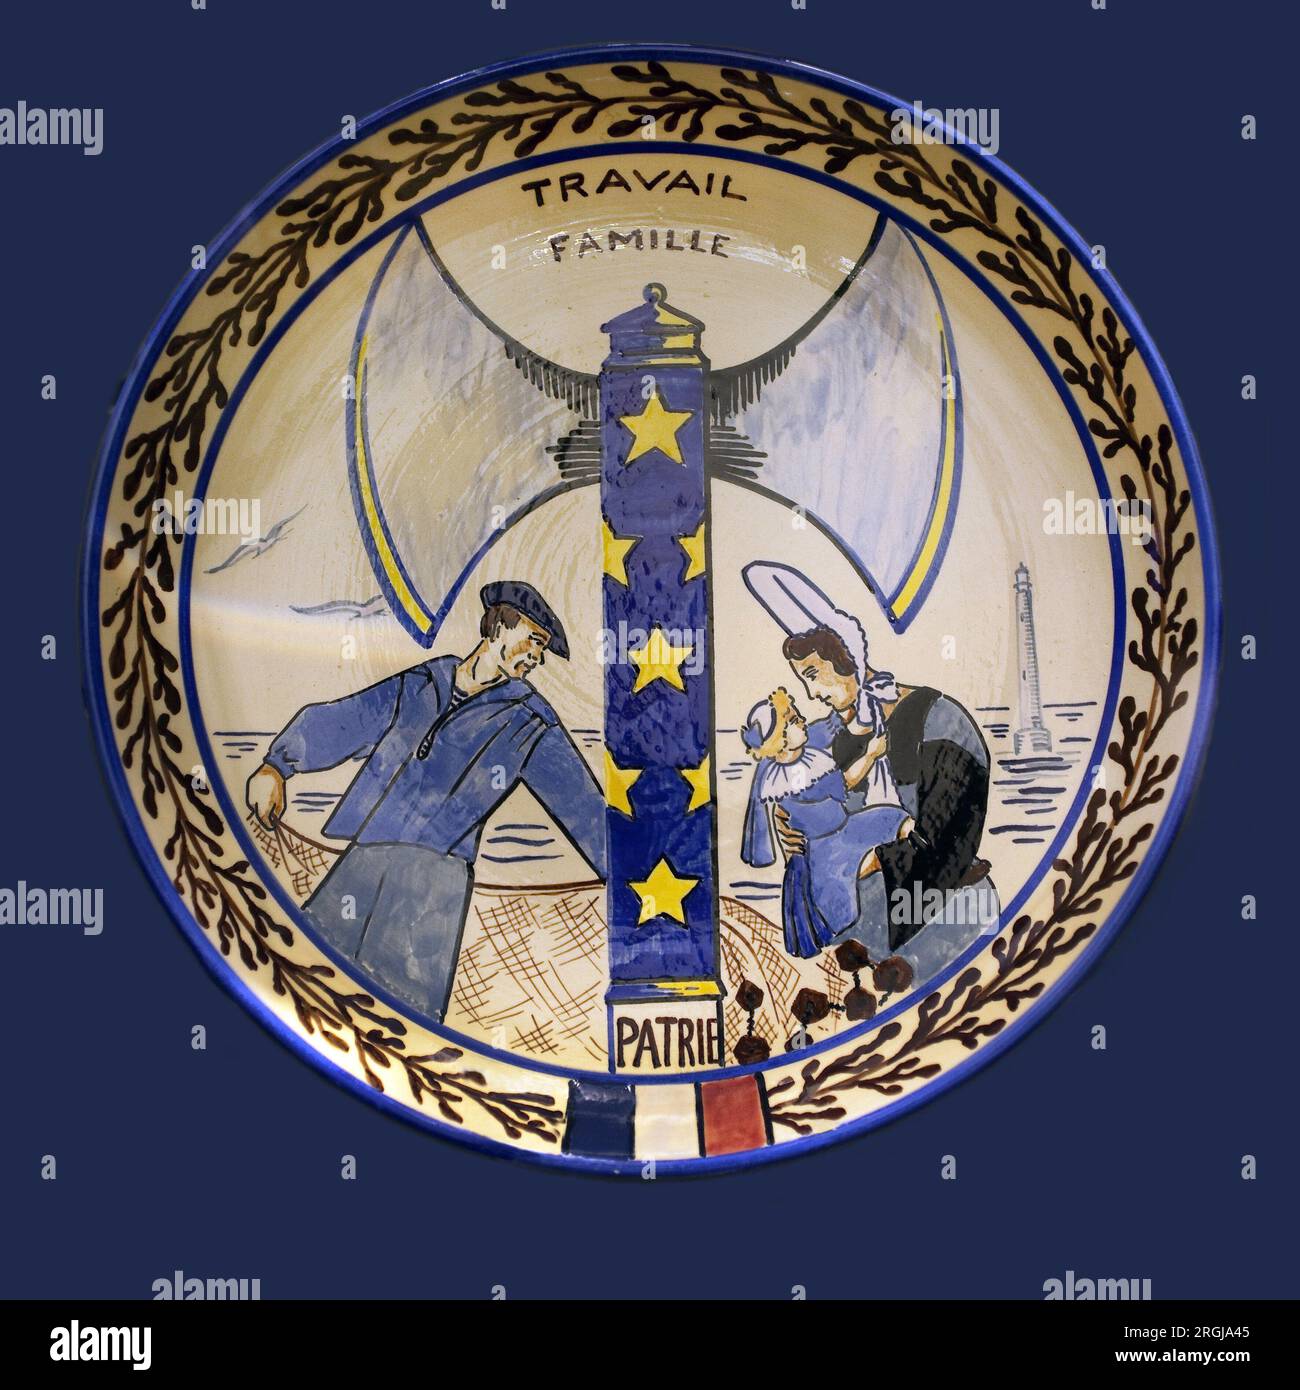 "Travail, famille, patrie", plat de propagande vichyste. Faiencerie Polychrom, faiencerie HB, 1941-1944. Musée breton de Quimper. Stockfoto